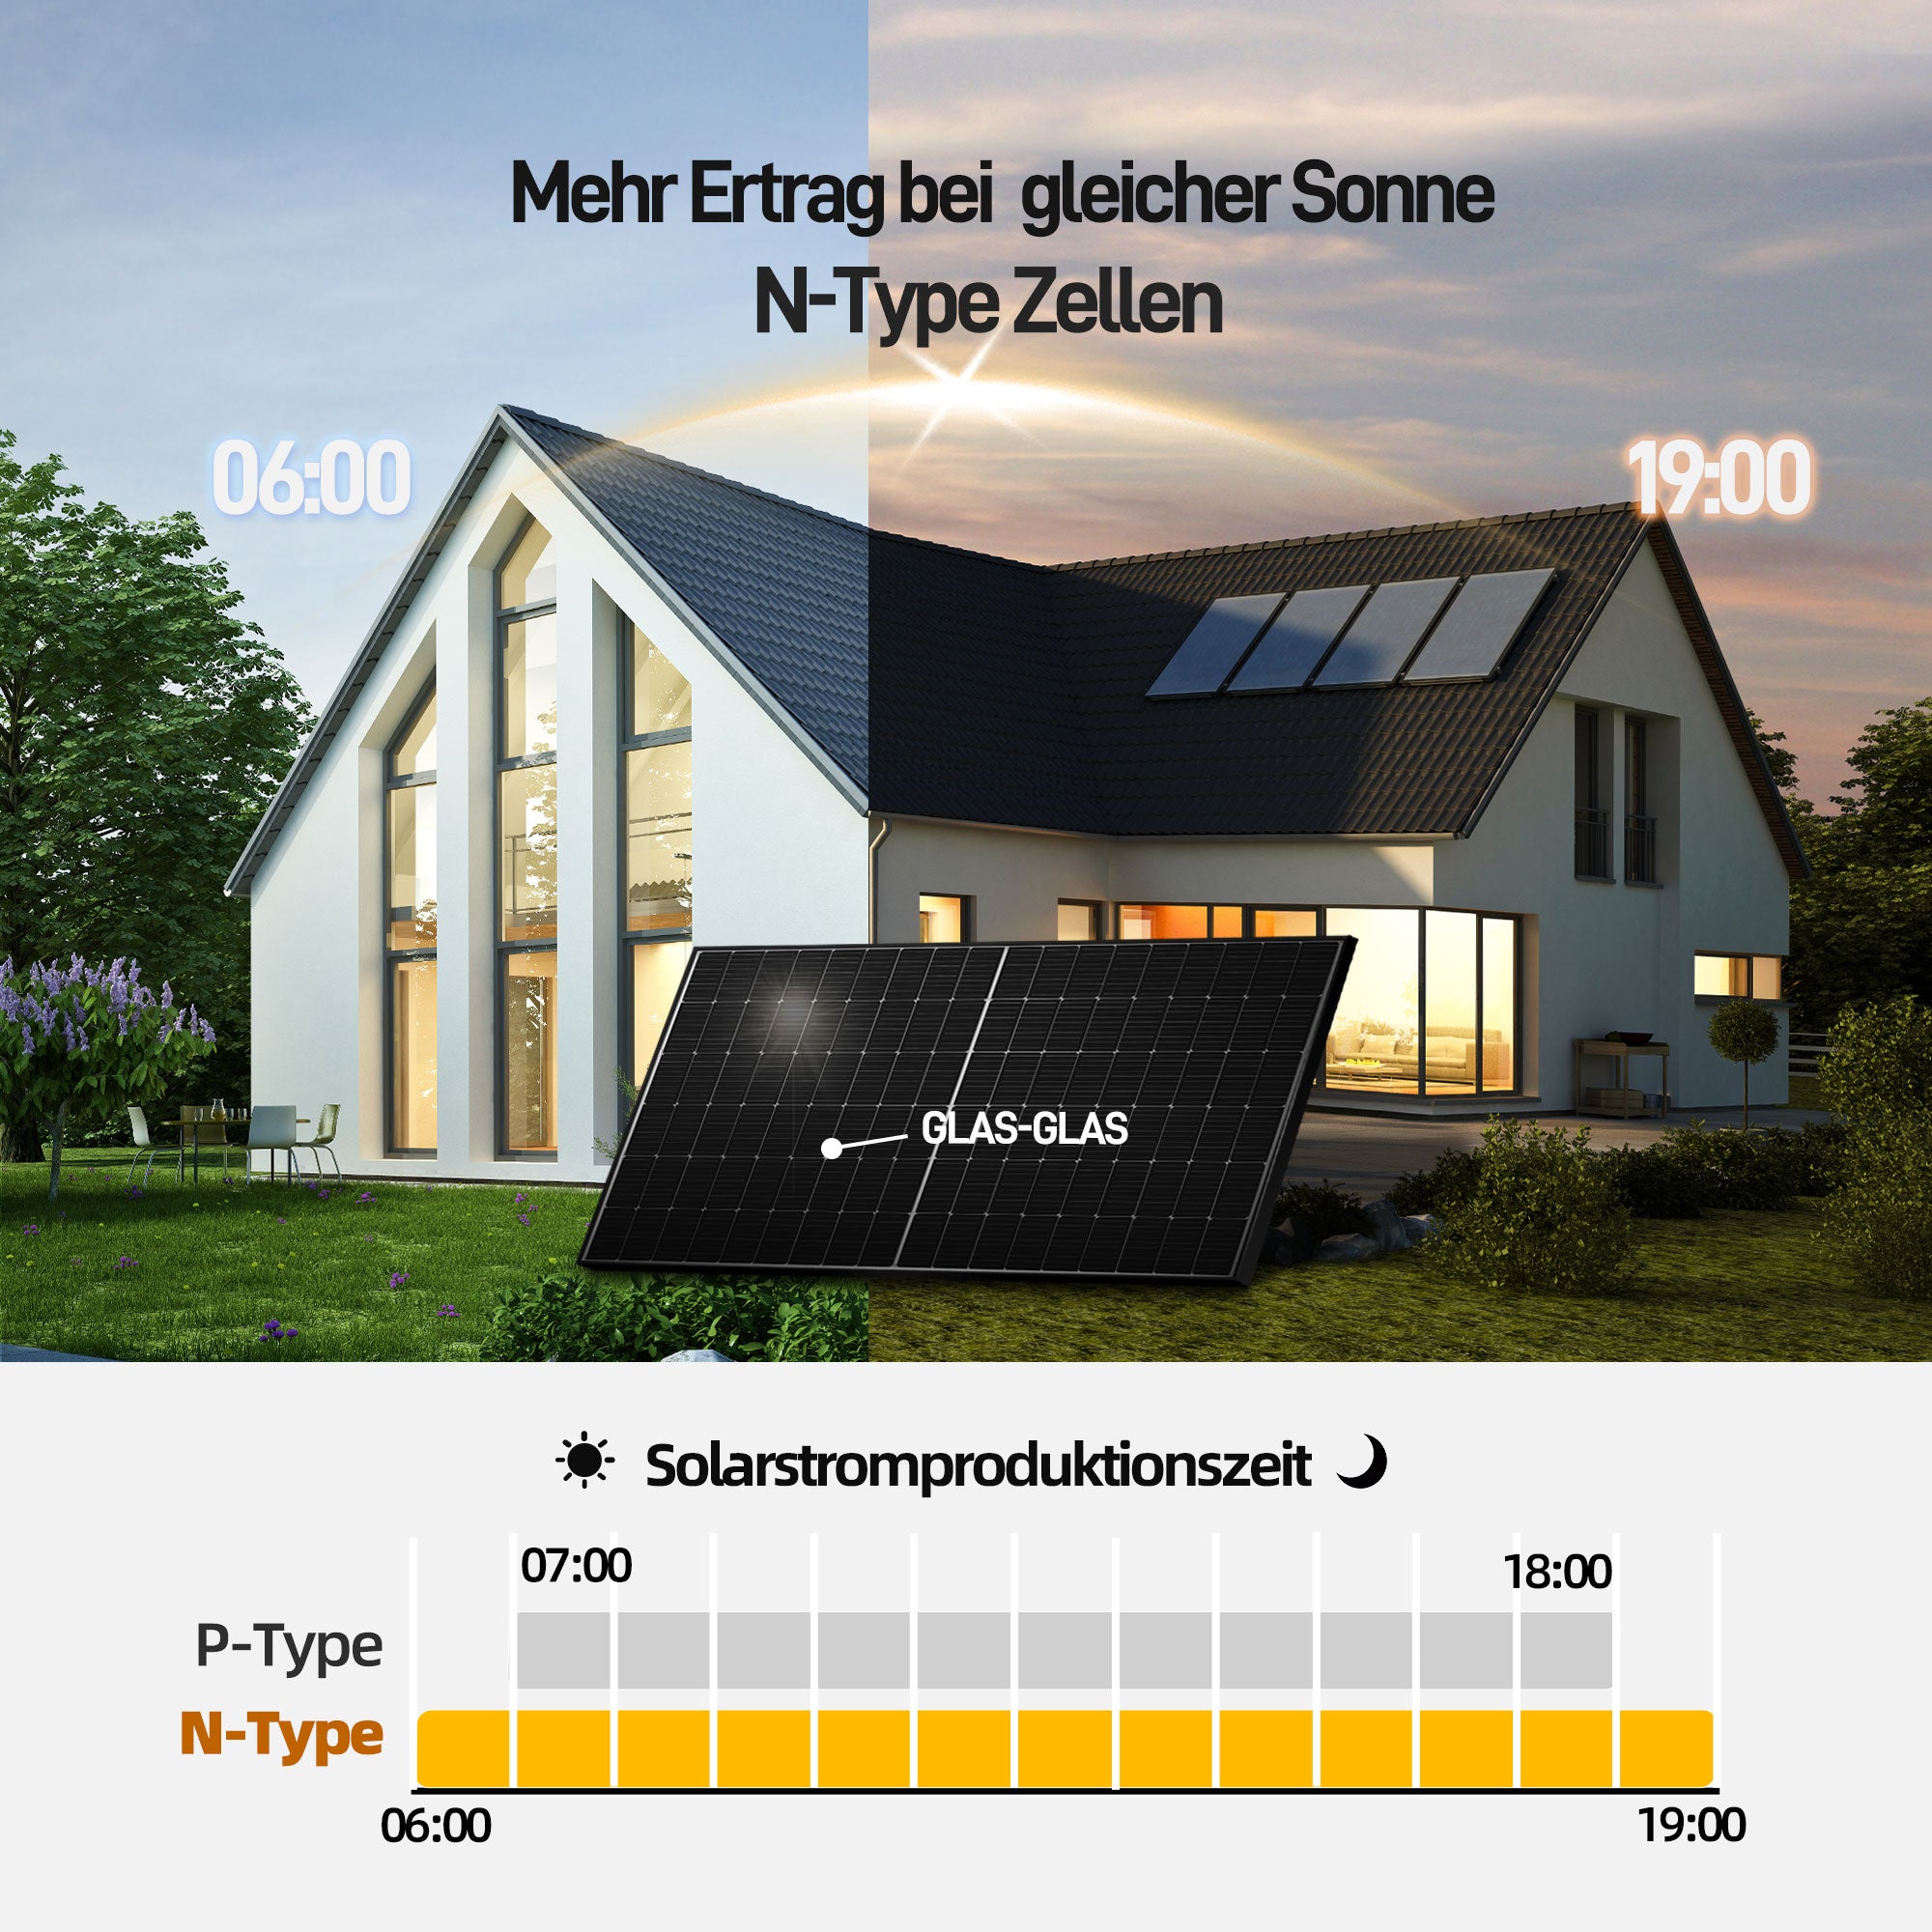 EFORU Komplettset Balkonkraftwerk mit Solarspeicher, enthält 2x440W bifaziale Glas-Glas-Solarmodule, Anker-Wechselrichter 800W, Anker SOLlX Solarbank E1600 und Kabel